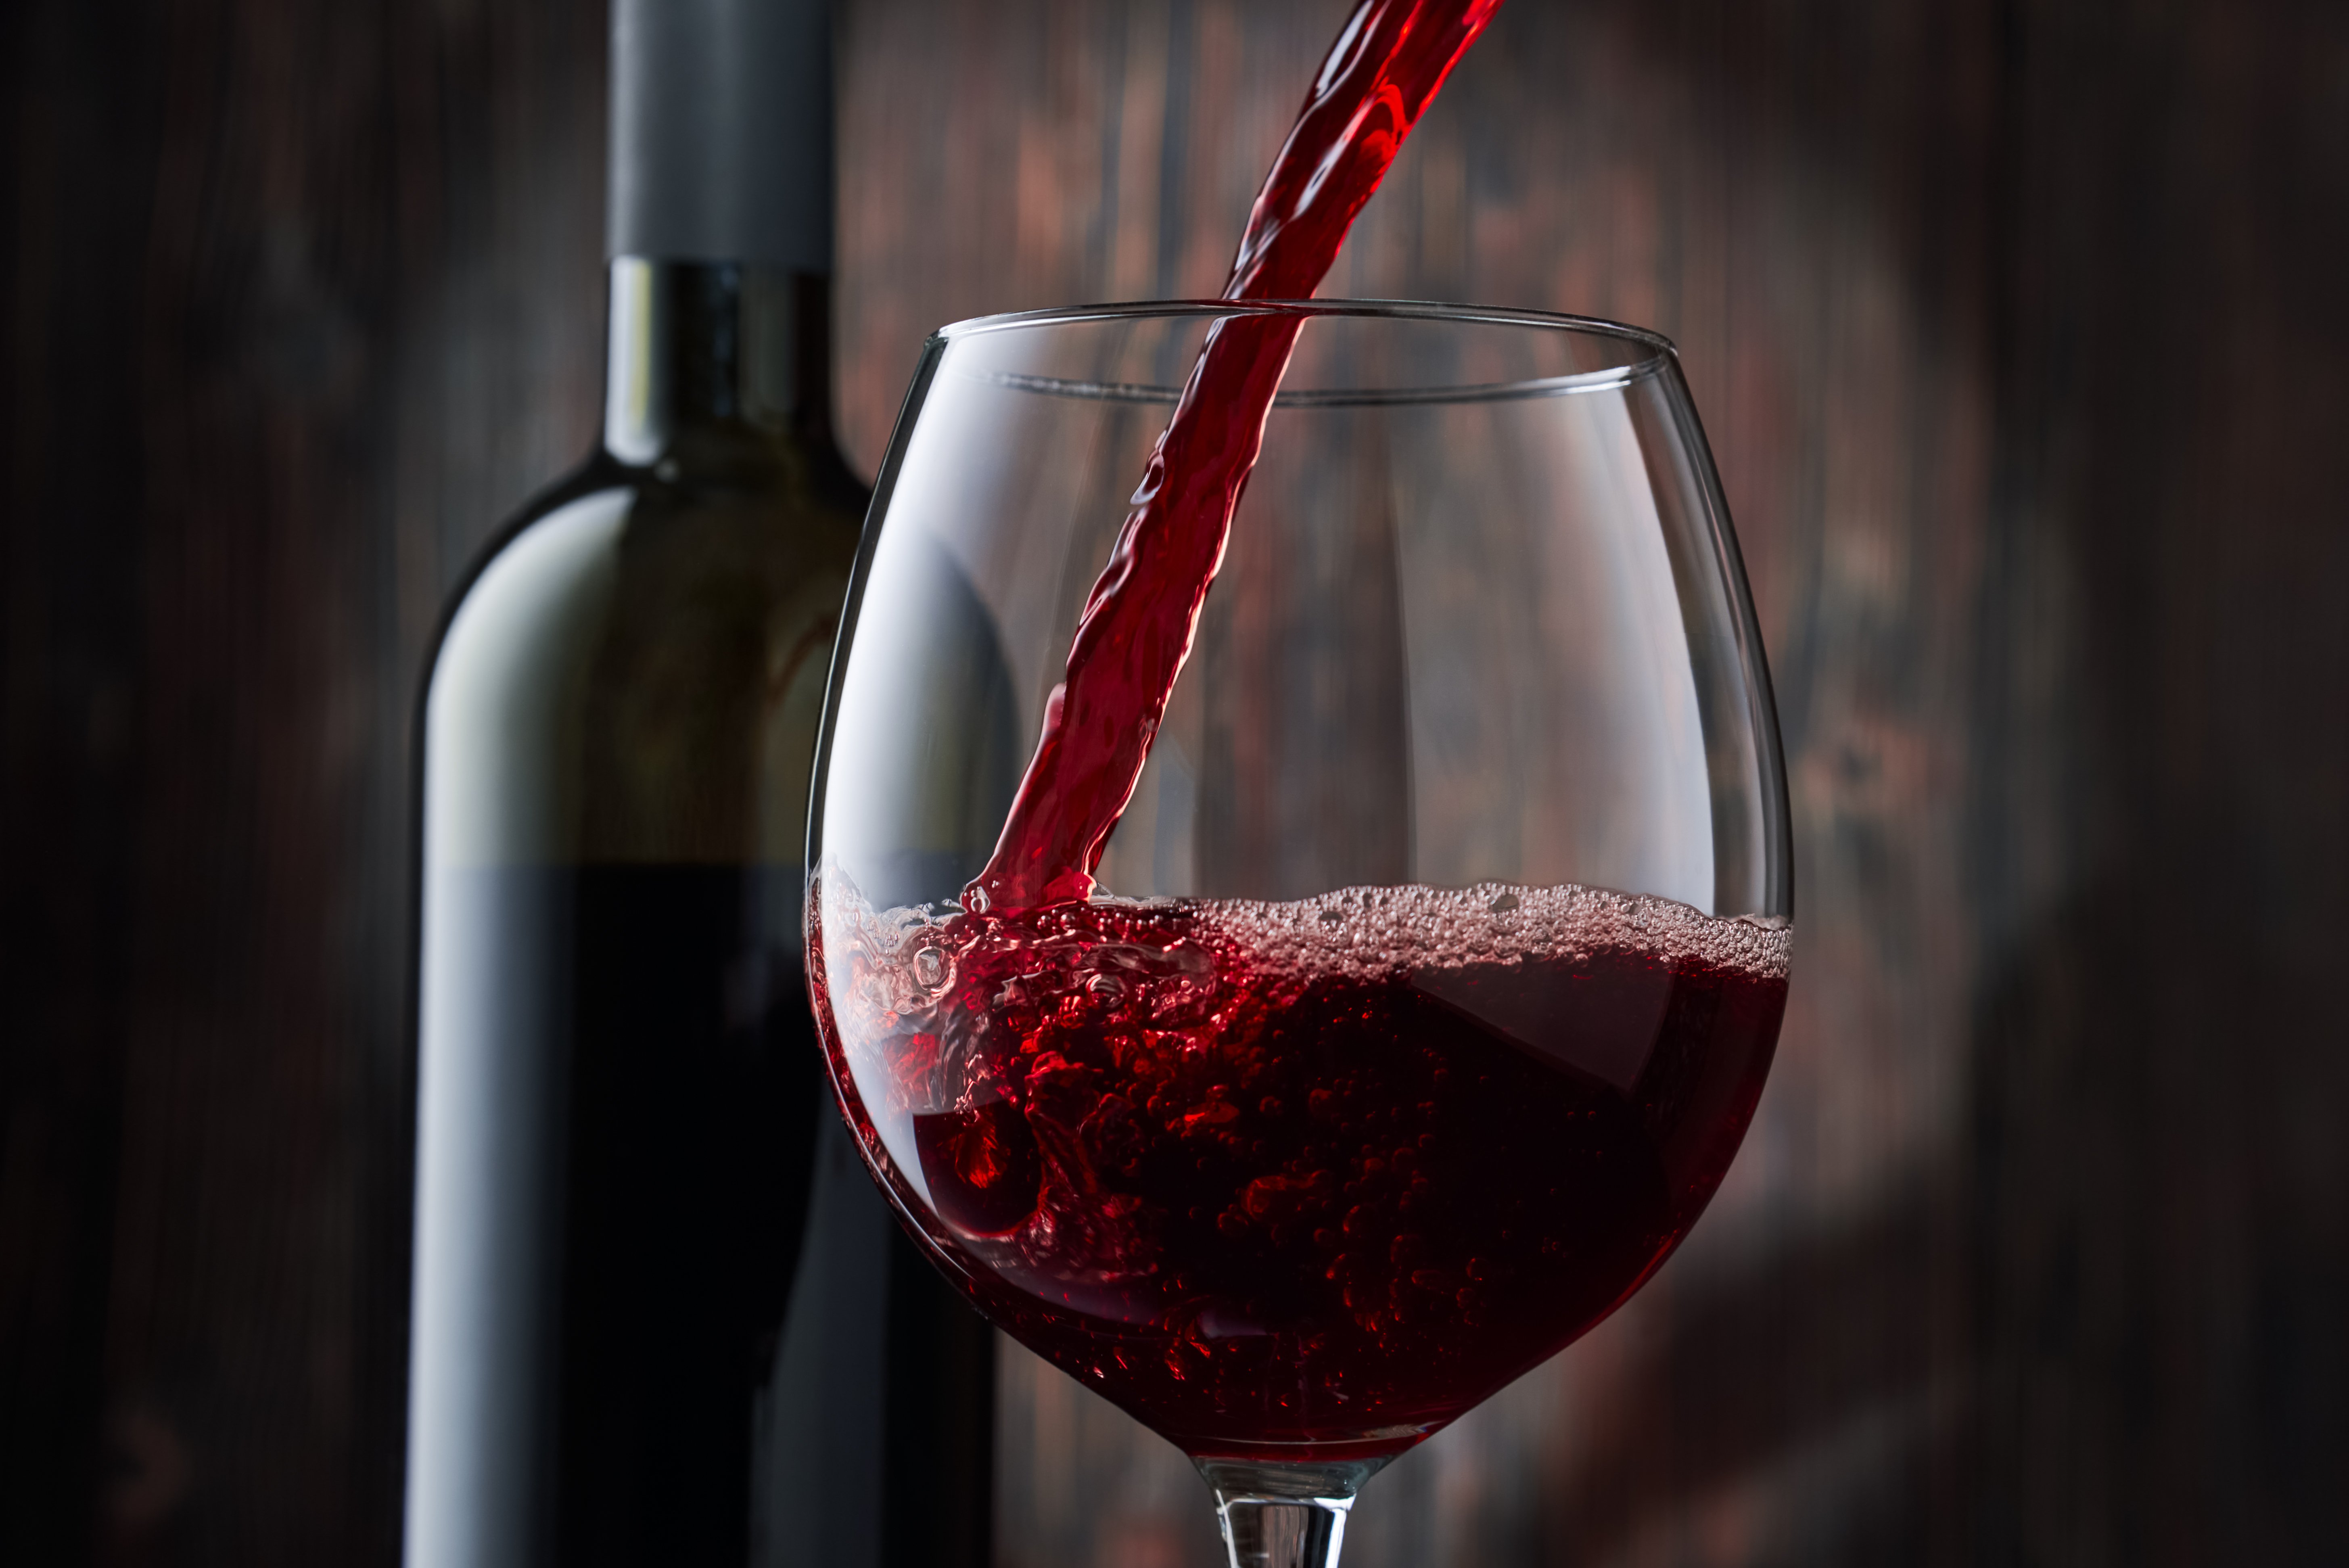 Mercado registra aumento na busca por esse tipo de bebida e vinícolas se preparam para ampliar oferta. Conheça 4 opções zero álcool